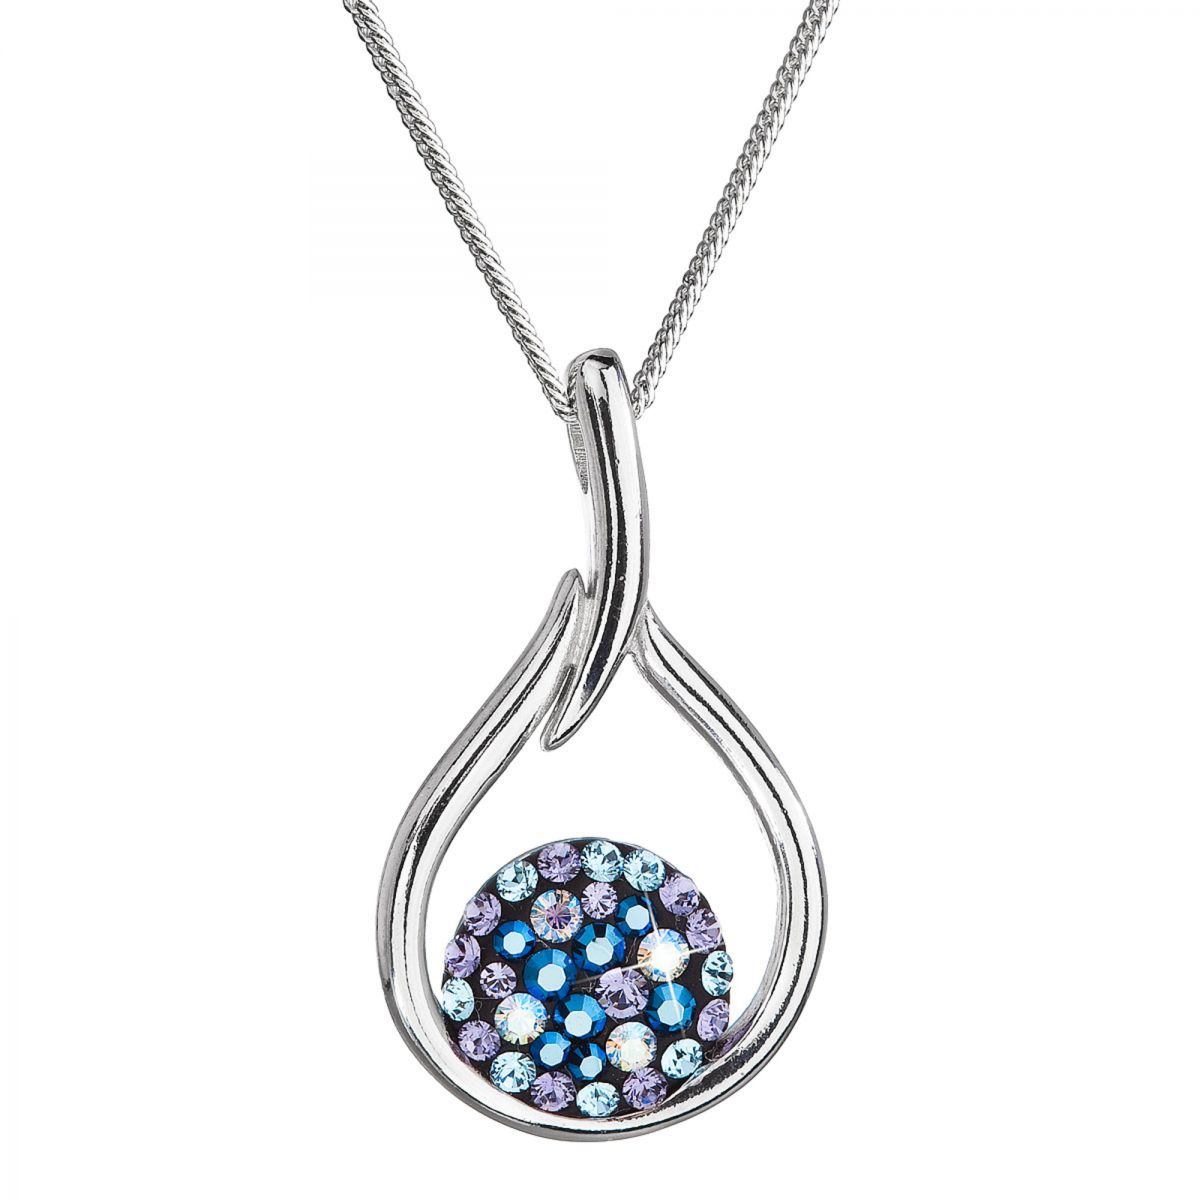 Stříbrný náhrdelník se Swarovski krystaly kapka 32075.3 blue style, ryzost 925/1000